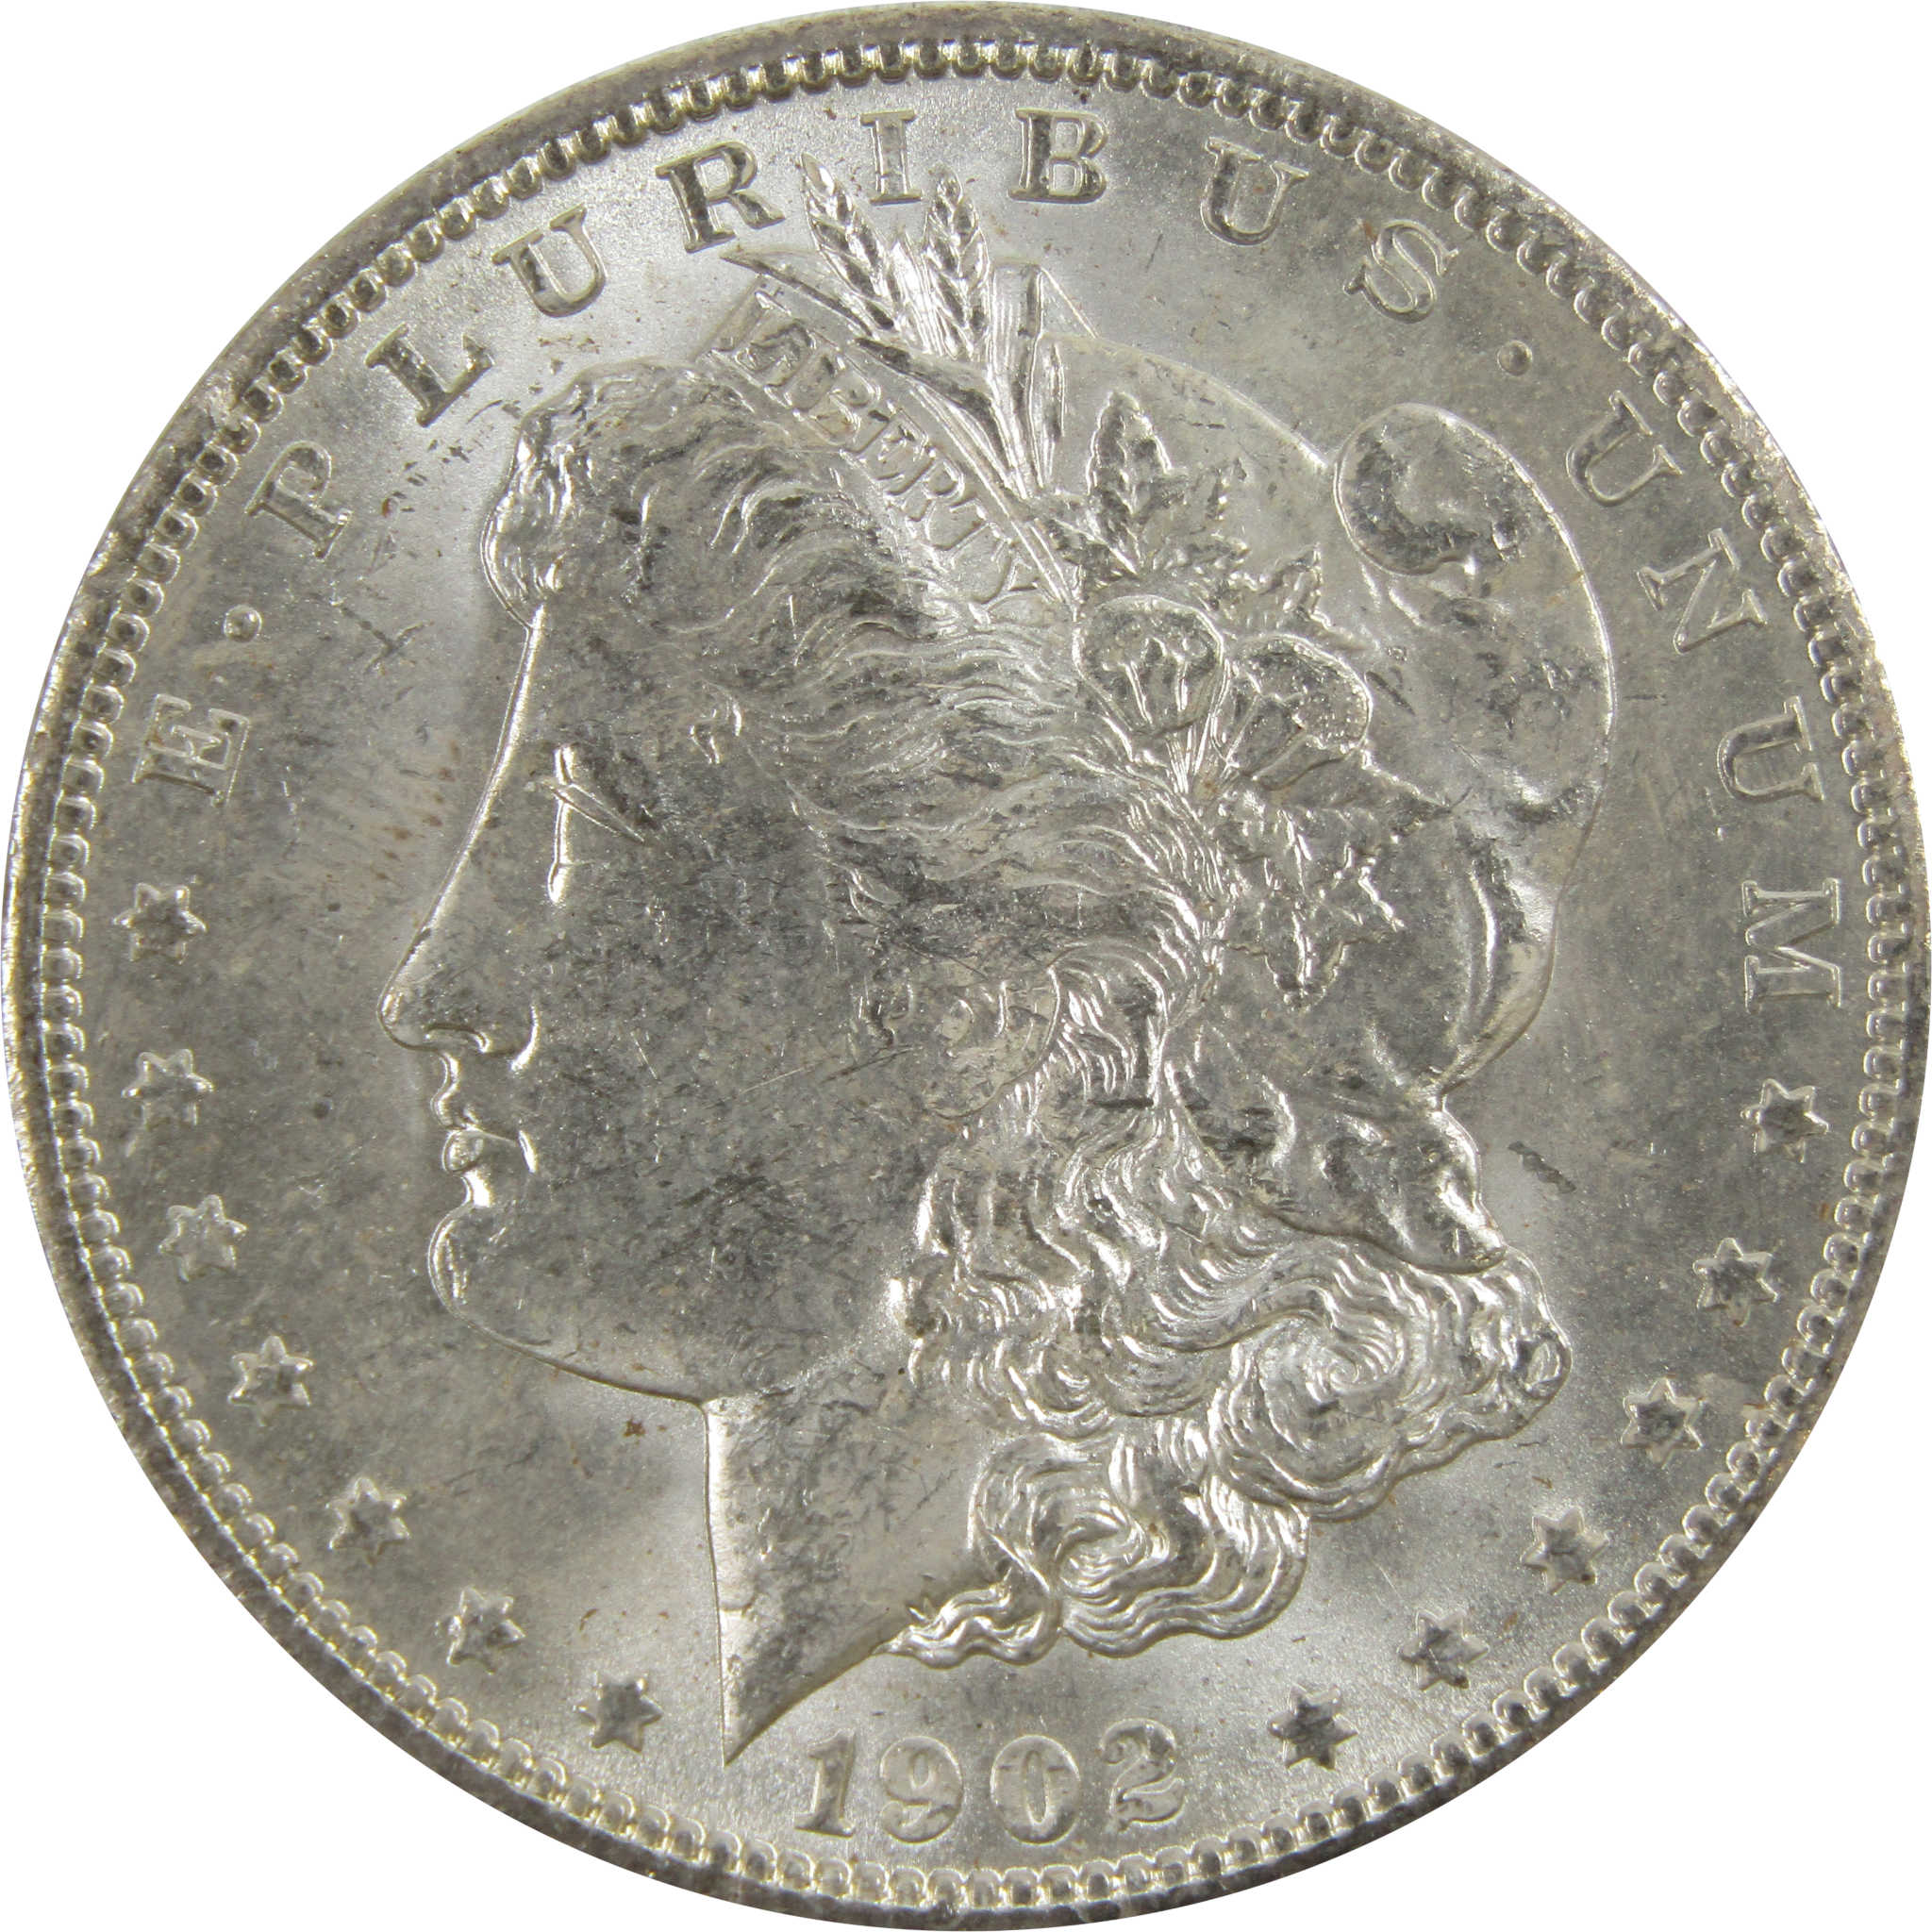 1902 O Morgan Dollar BU Uncirculated 90% Silver $1 Coin SKU:I5229 - Morgan coin - Morgan silver dollar - Morgan silver dollar for sale - Profile Coins &amp; Collectibles